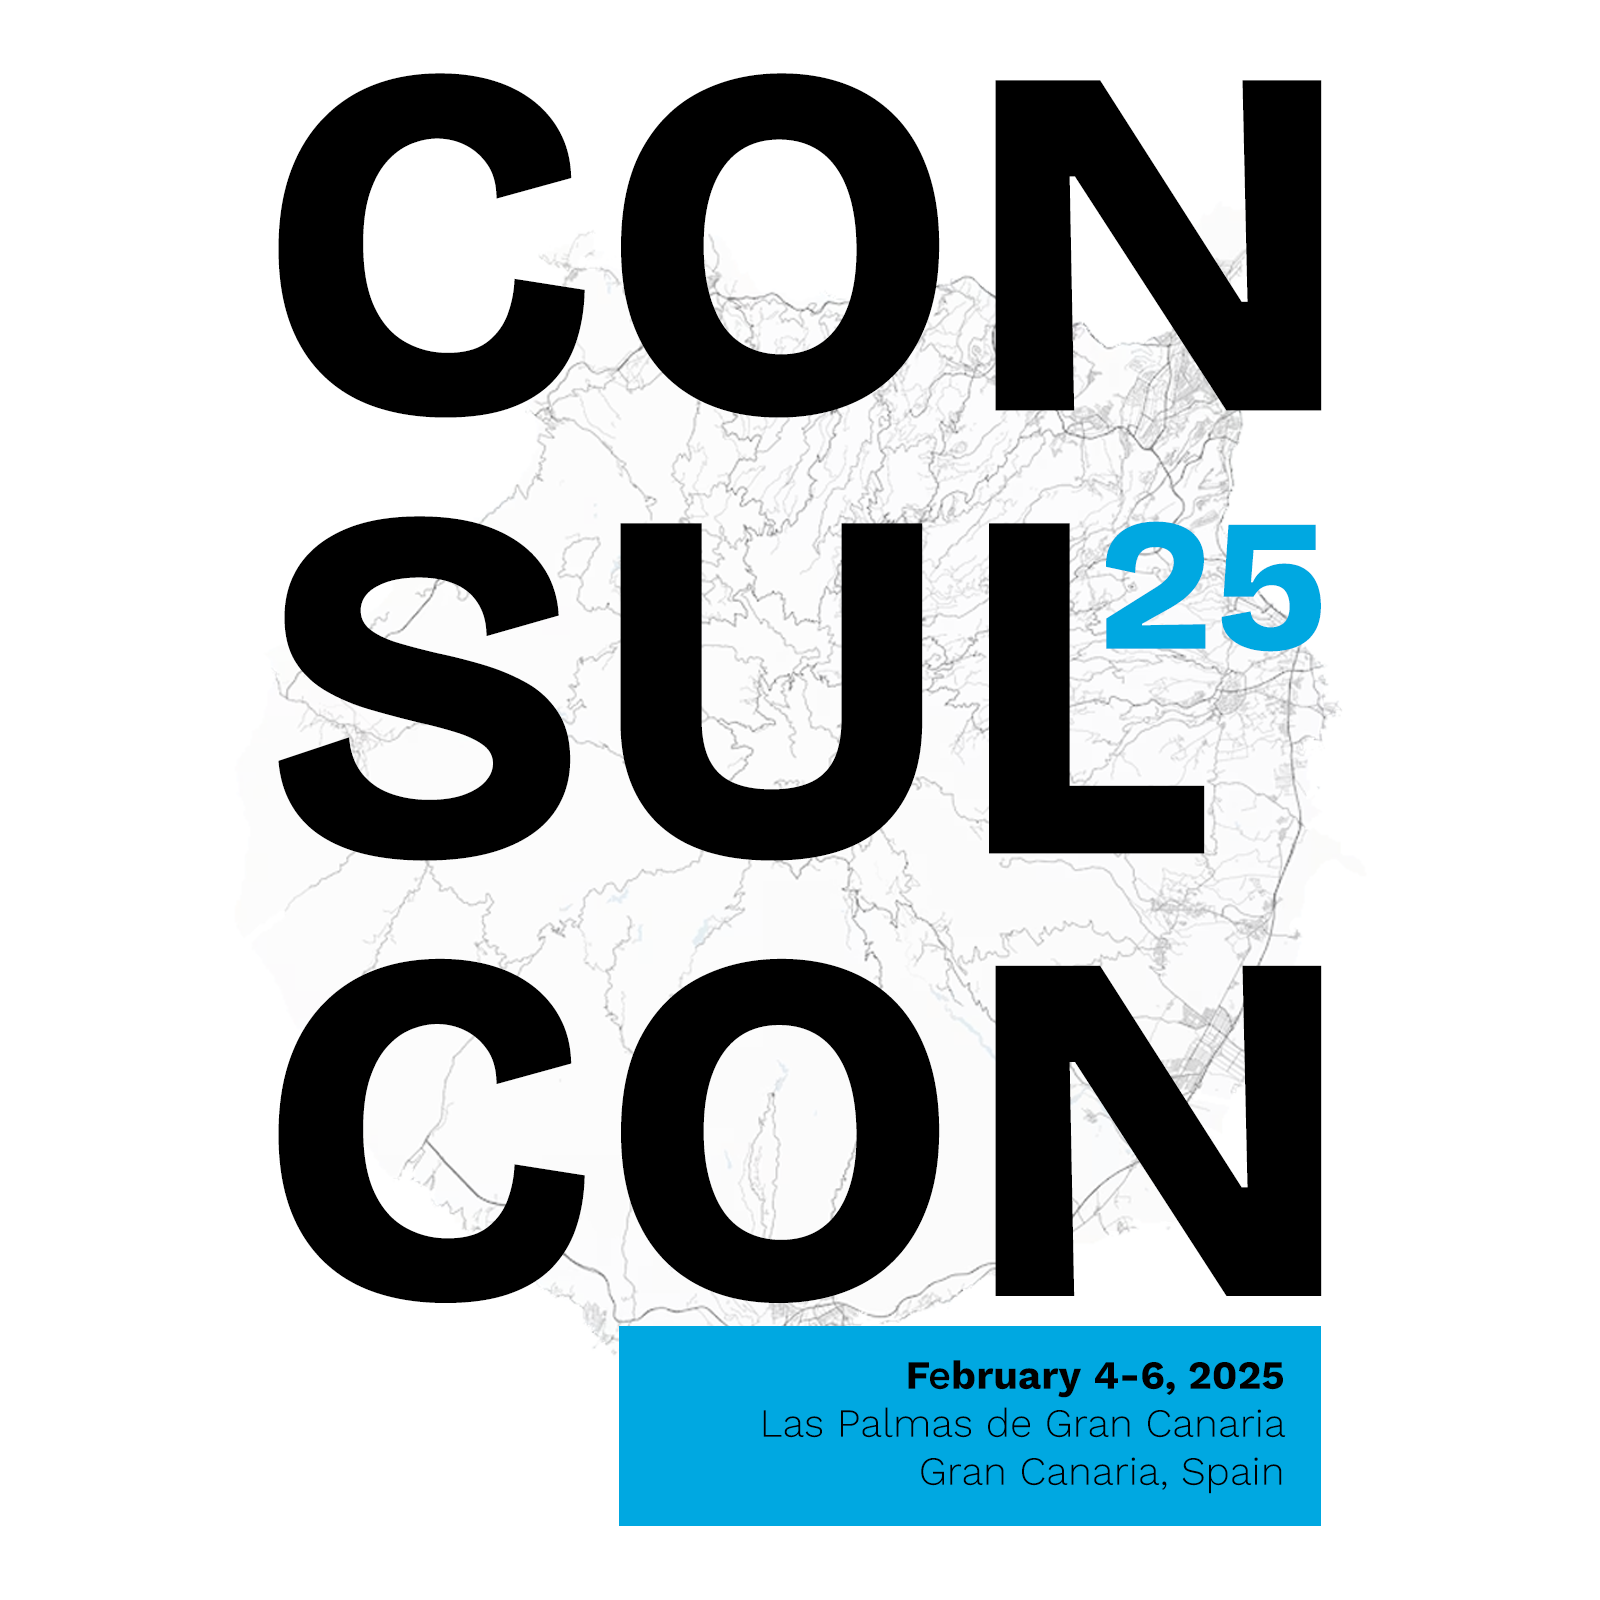 Consul Conference 2025: Gran Canaria